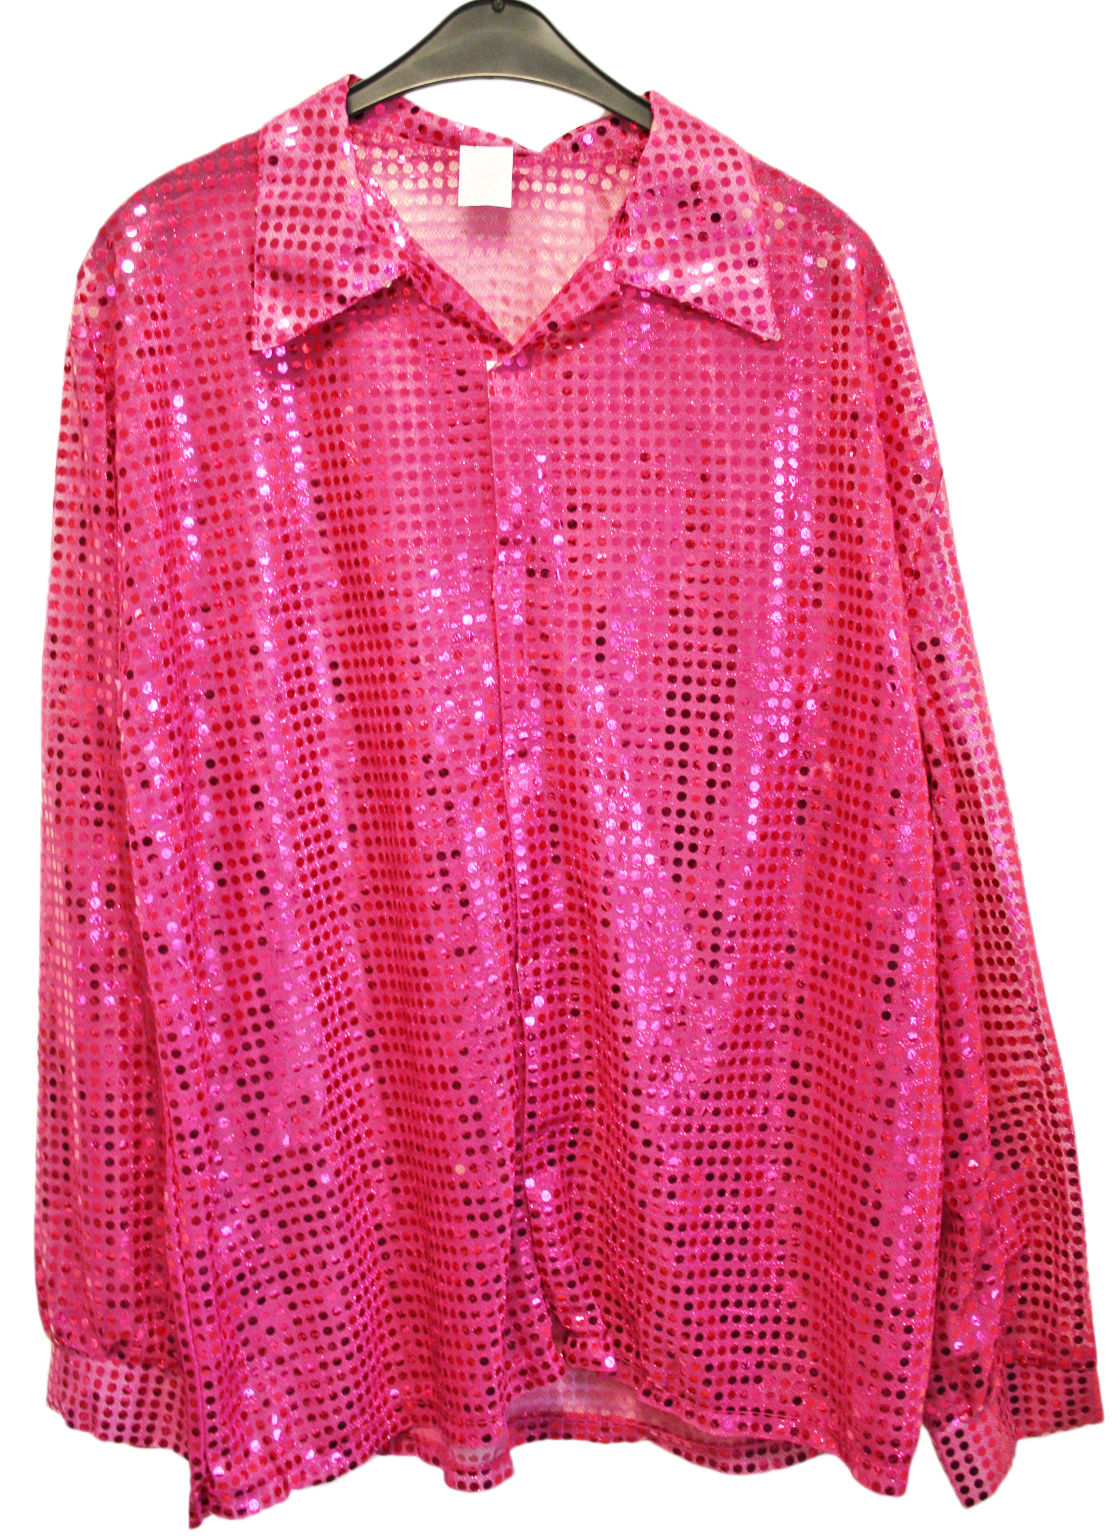 Pailletten-Hemd in pink | Disco-Hemd ( 2. Wahl )